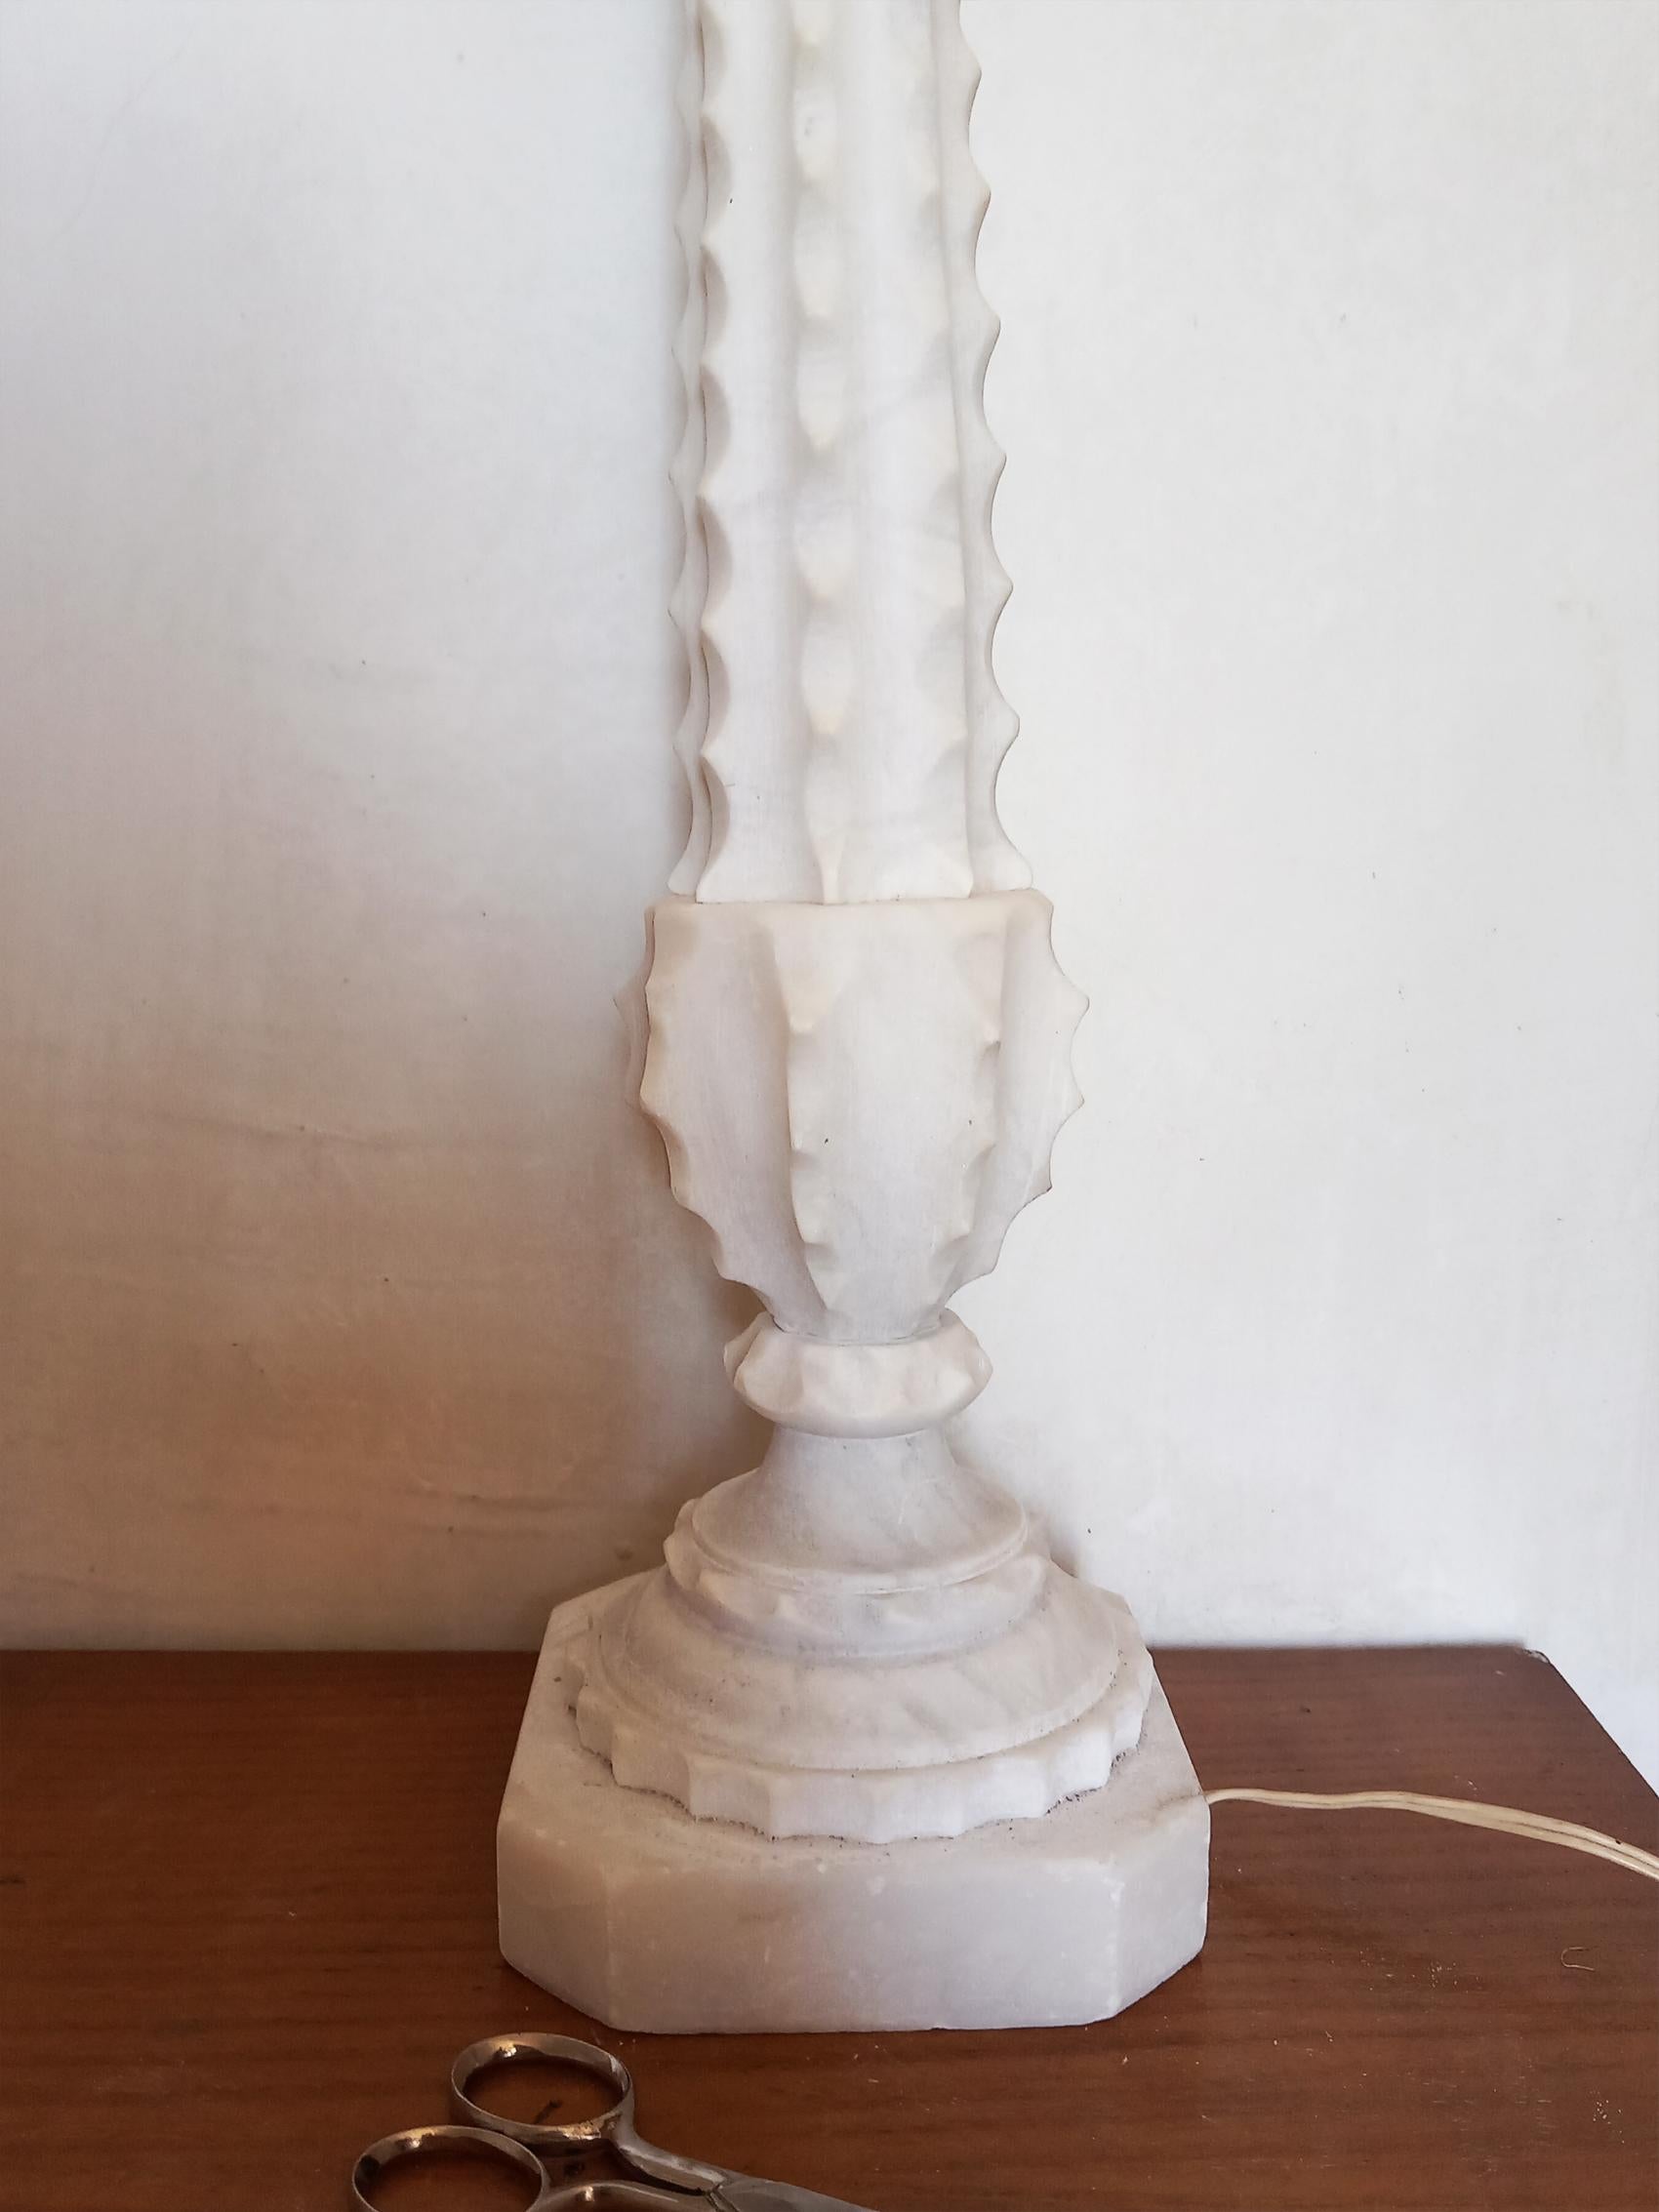  Art Deco Lampe en albâtre blanc ou marbre statuaire, forme organique, sculpture, lampe sculpturale. Pièce unique,  

Style classique. Lampe de table en albâtre blanc
Ces lampes sont de plus en plus difficiles à trouver et le seront encore plus à